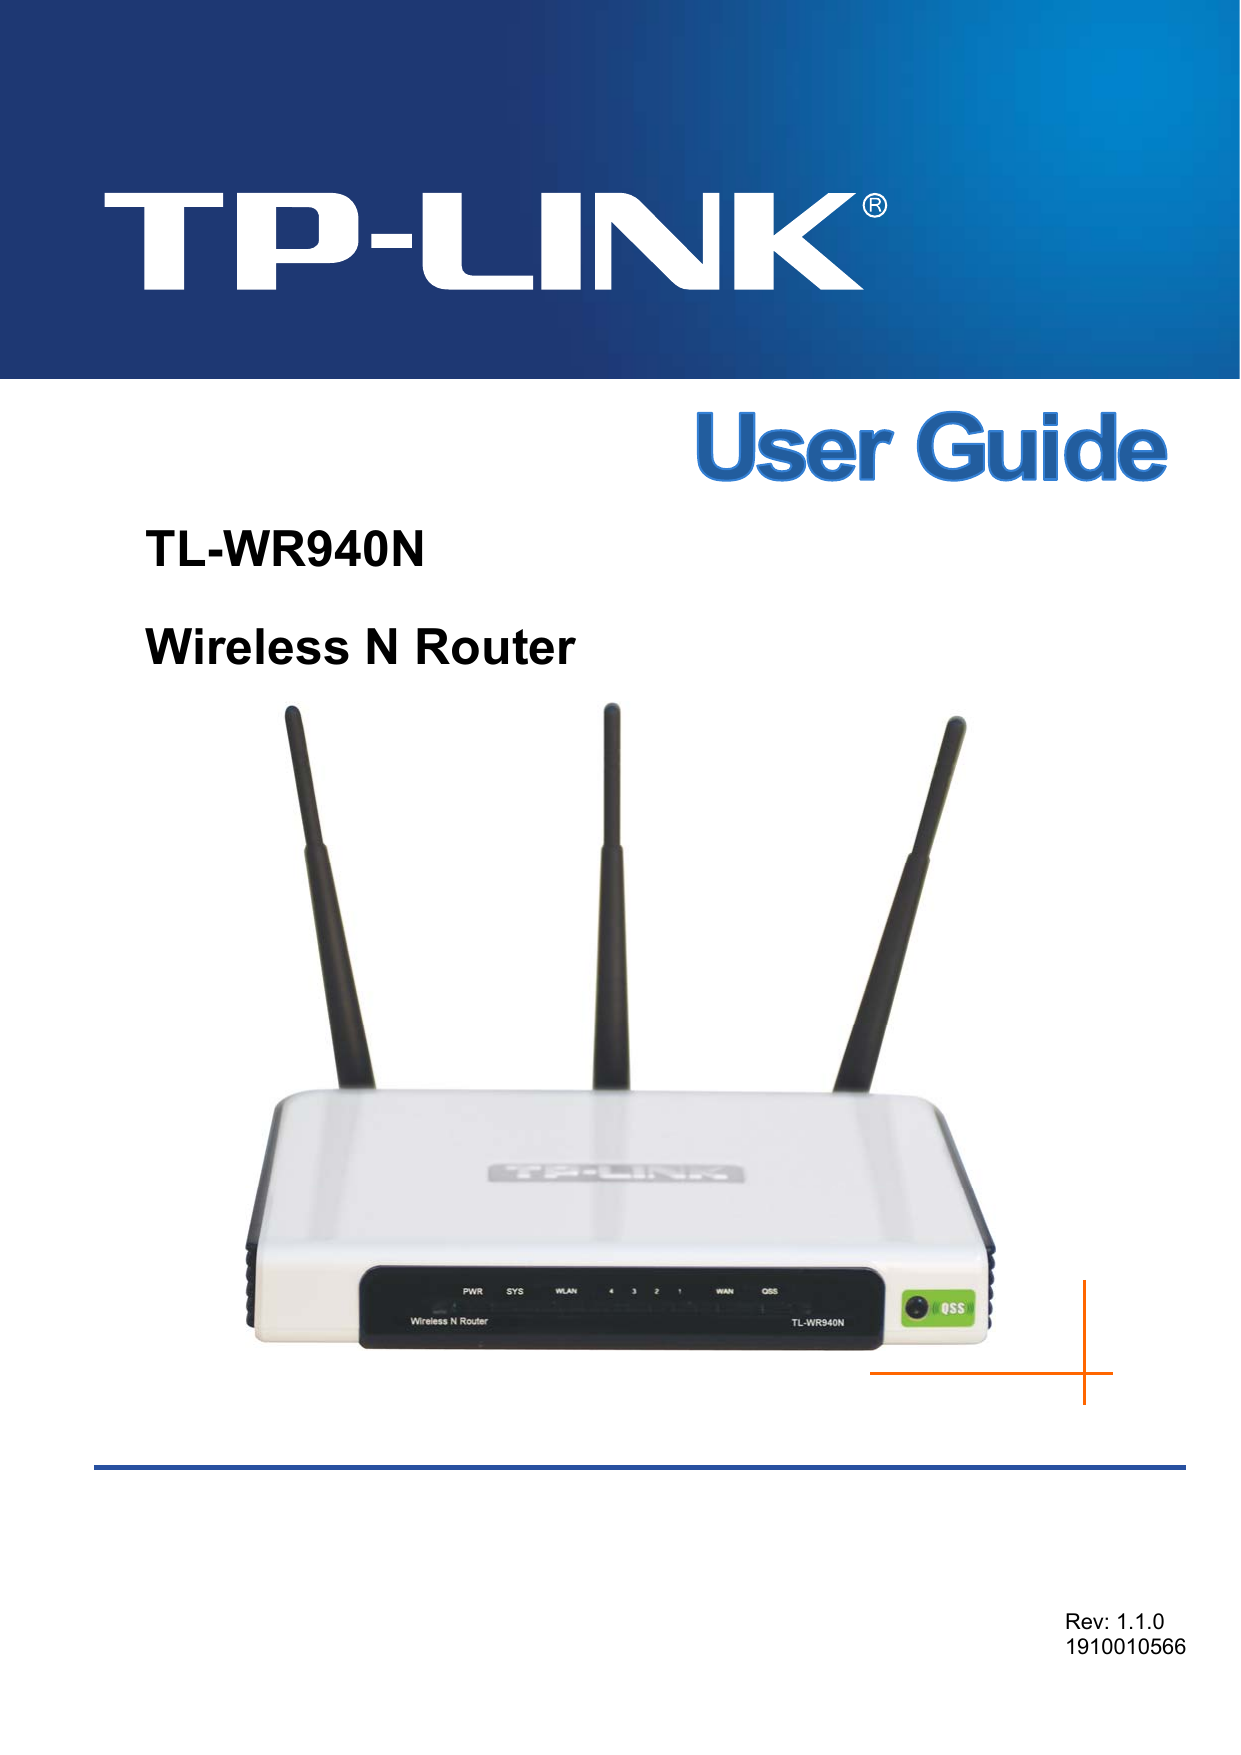   TL-WR940N Wireless N Router      Rev: 1.1.0 1910010566  